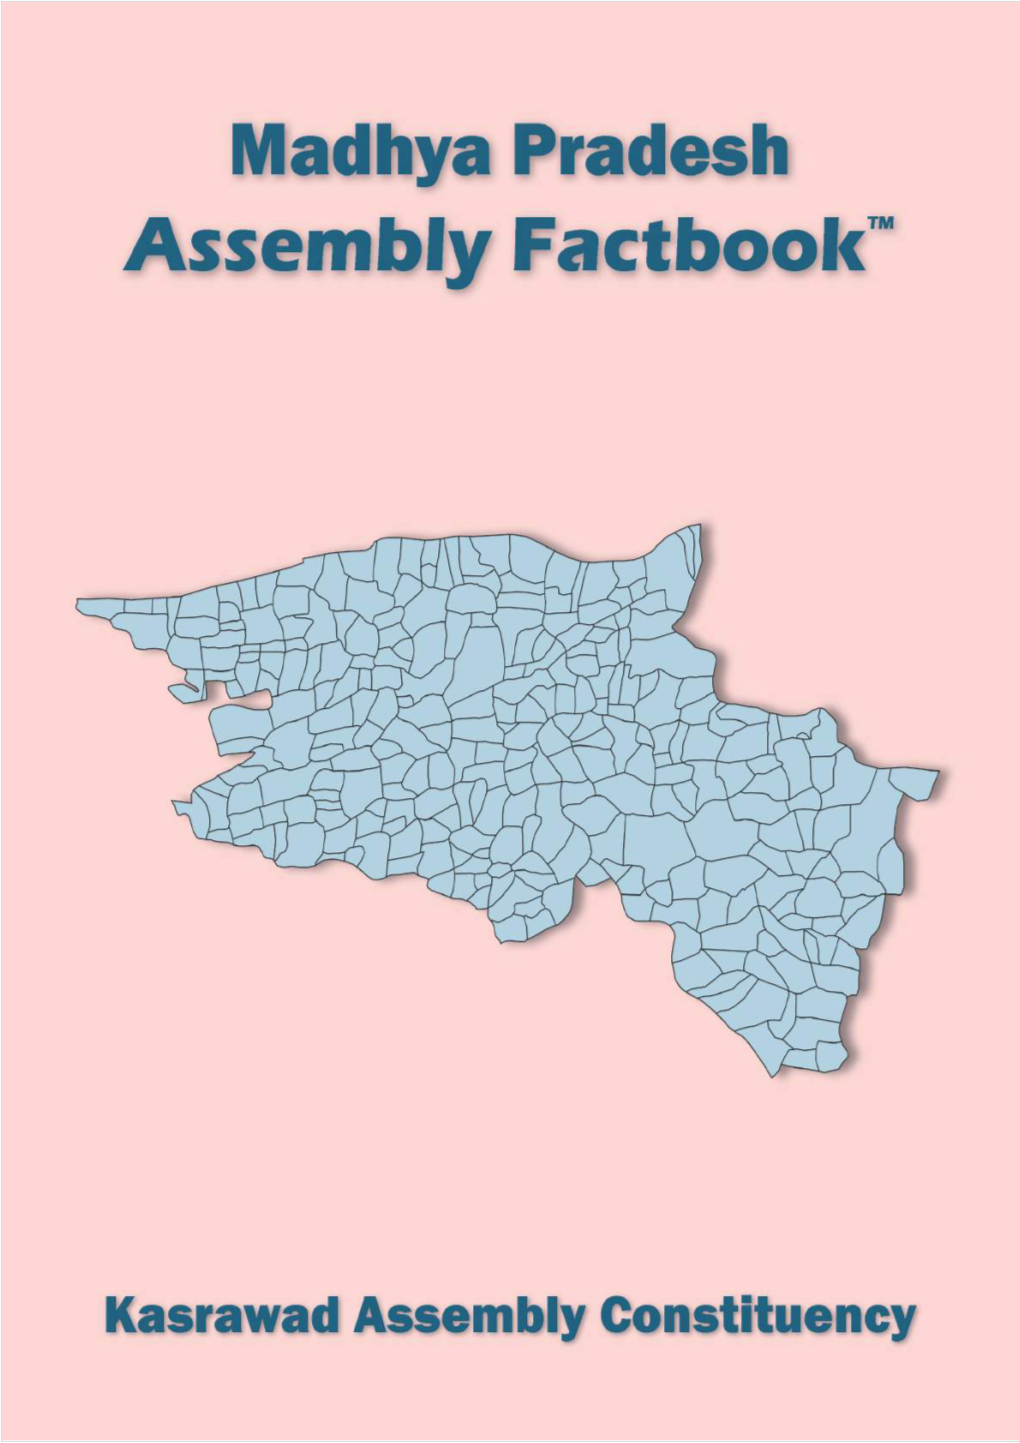 Kasrawad Assembly Madhya Pradesh Factbook